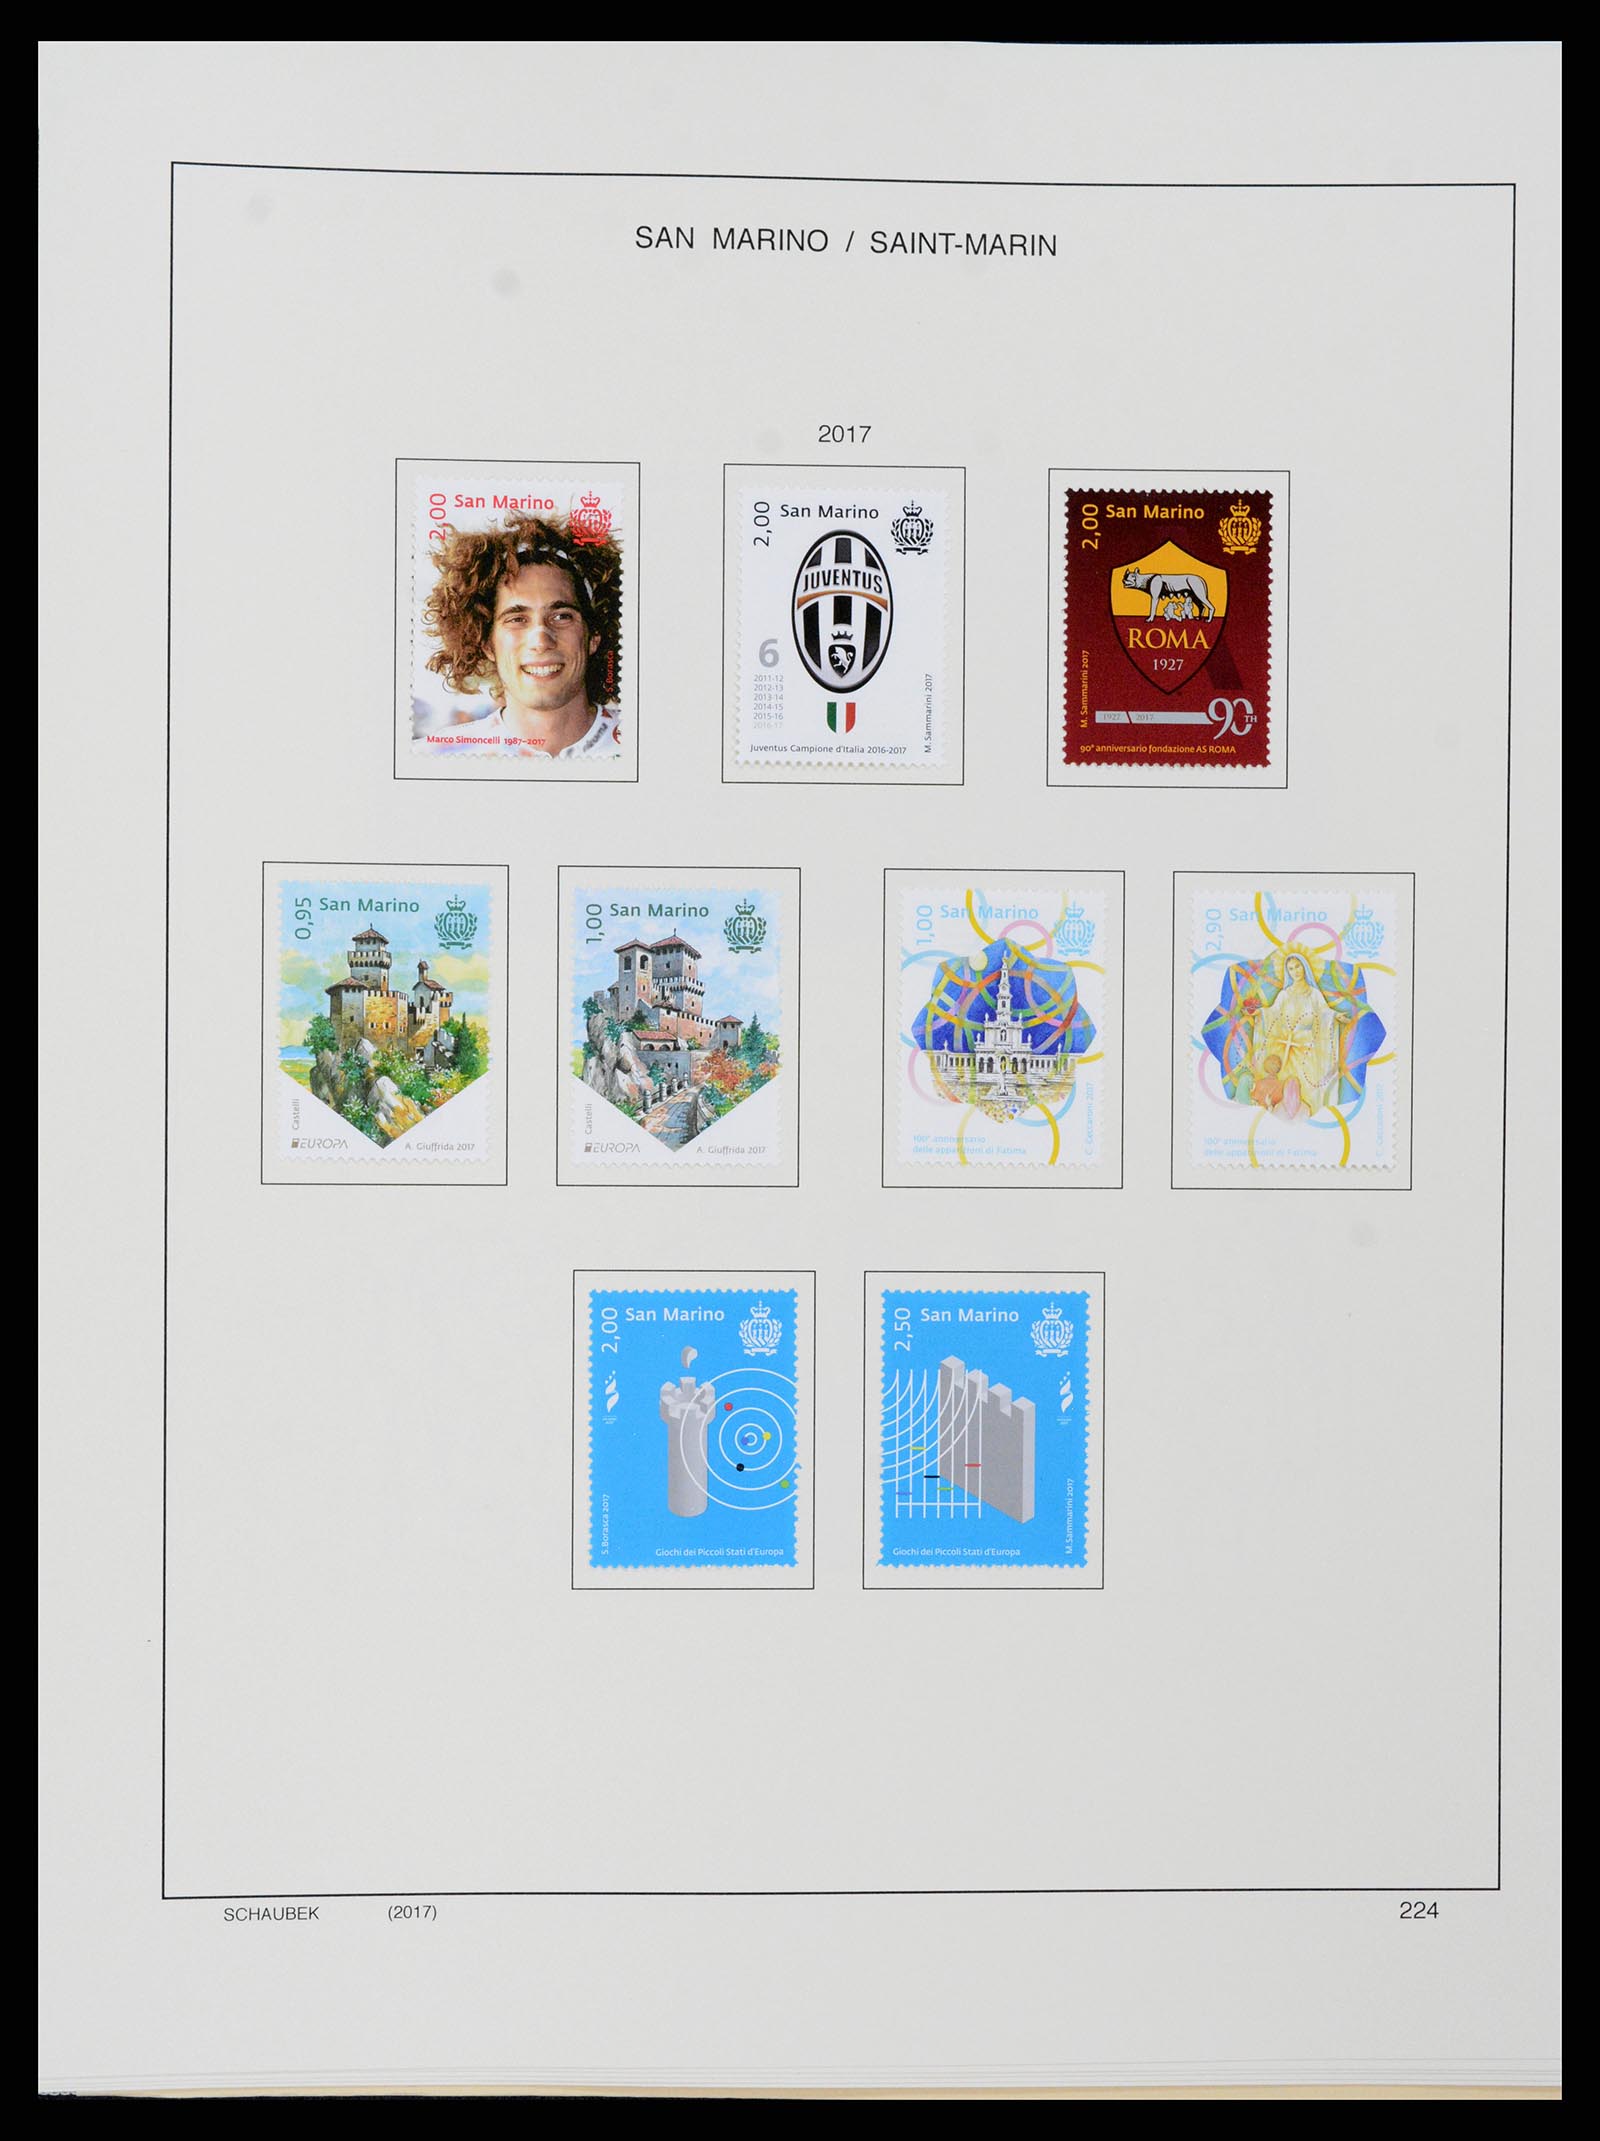 37556 295 - Postzegelverzameling 37556 San Marino 1877-2017.